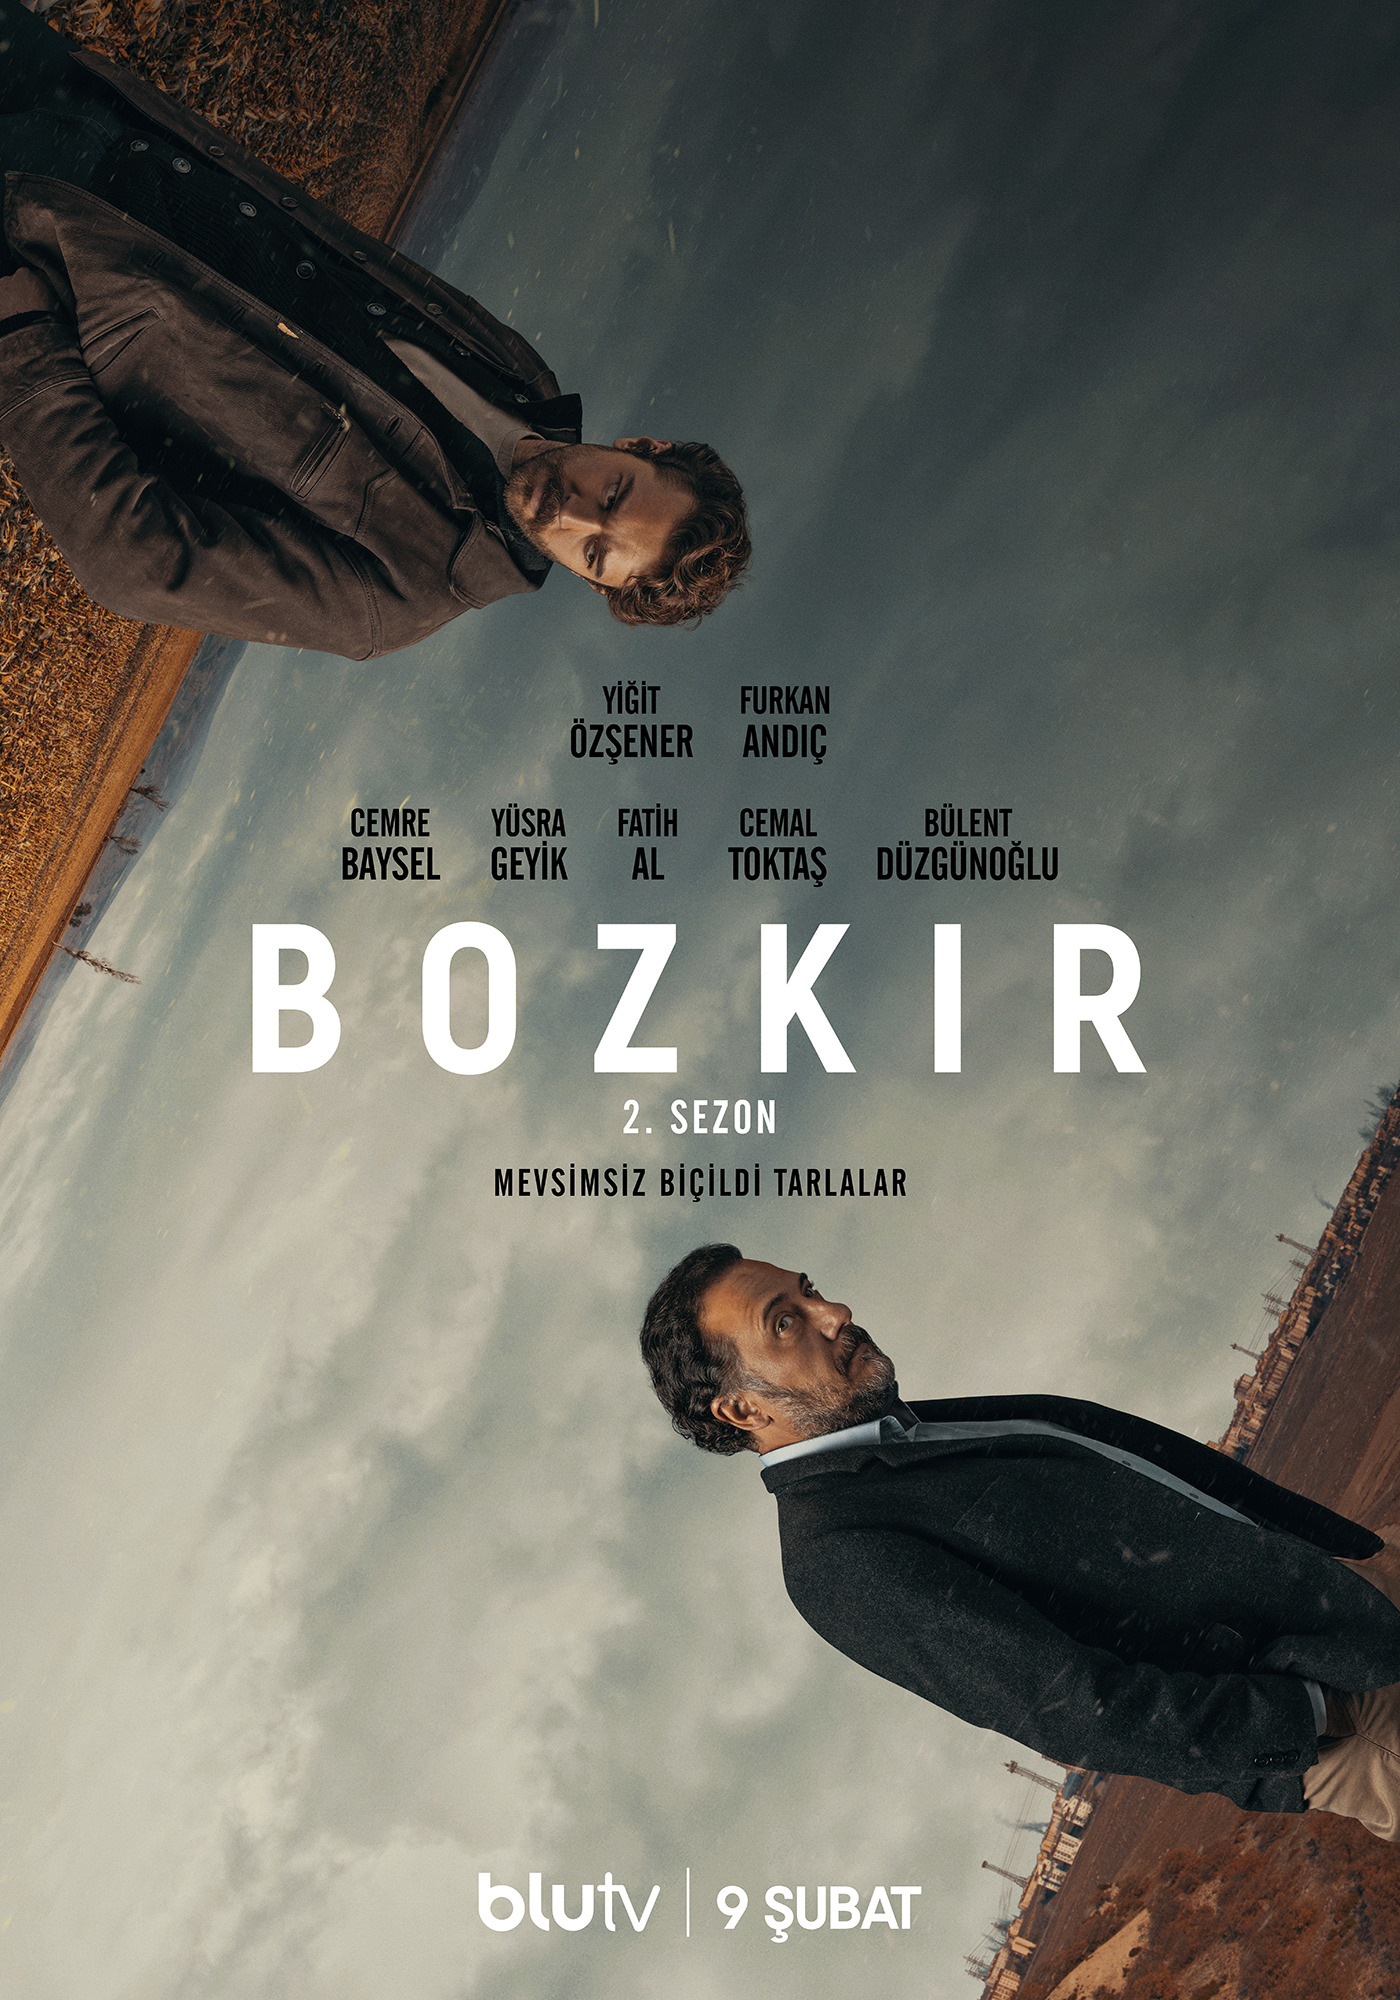 Mega Sized TV Poster Image for Bozkir (#6 of 10)